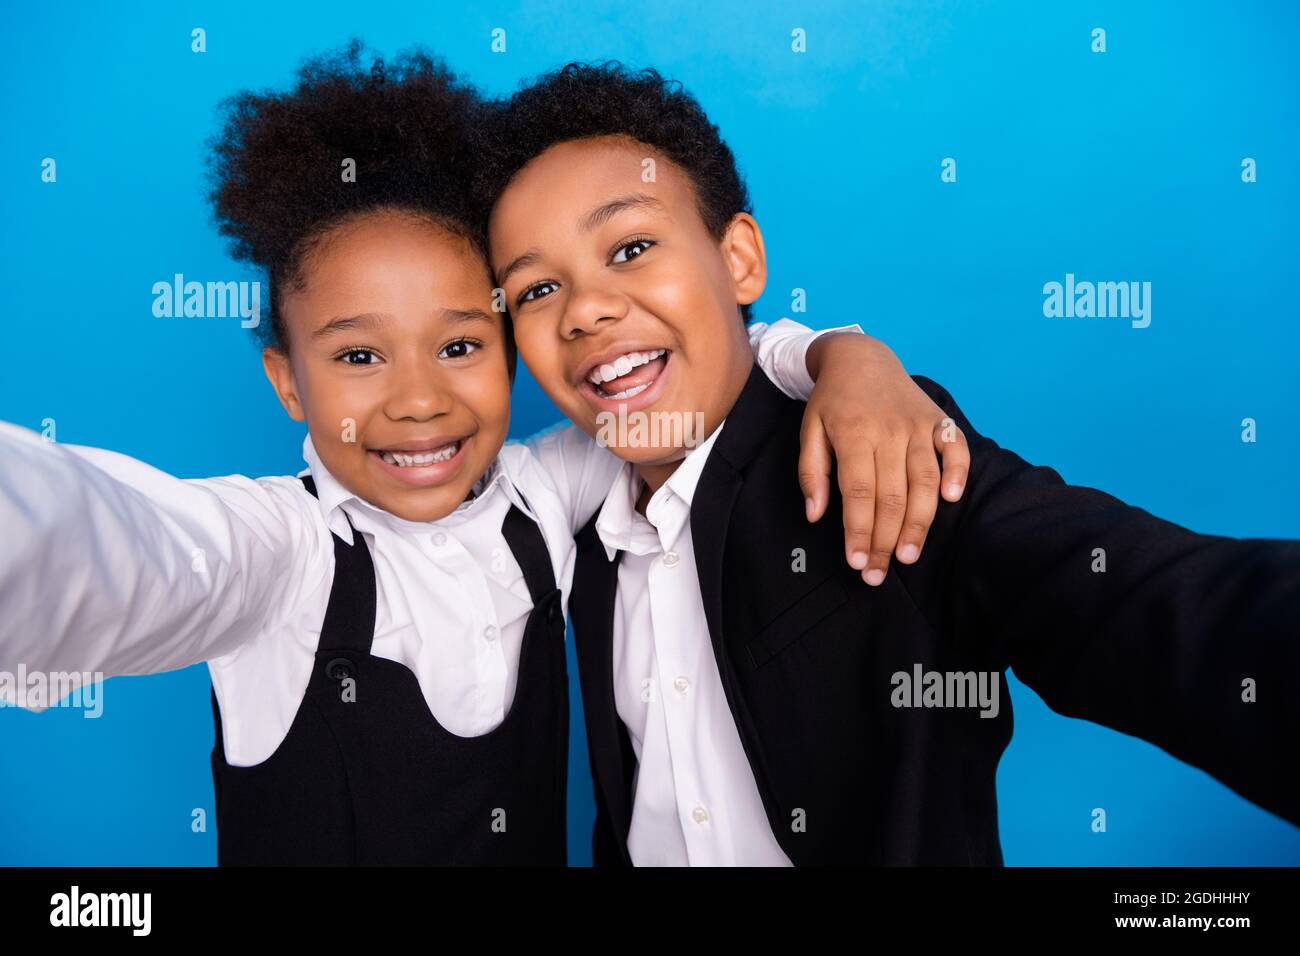 Foto von kleinen kleinen afro amerikanische Kinder machen Selfie tragen einheitliche Lächeln Umarmung isoliert auf blauem Hintergrund Stockfoto